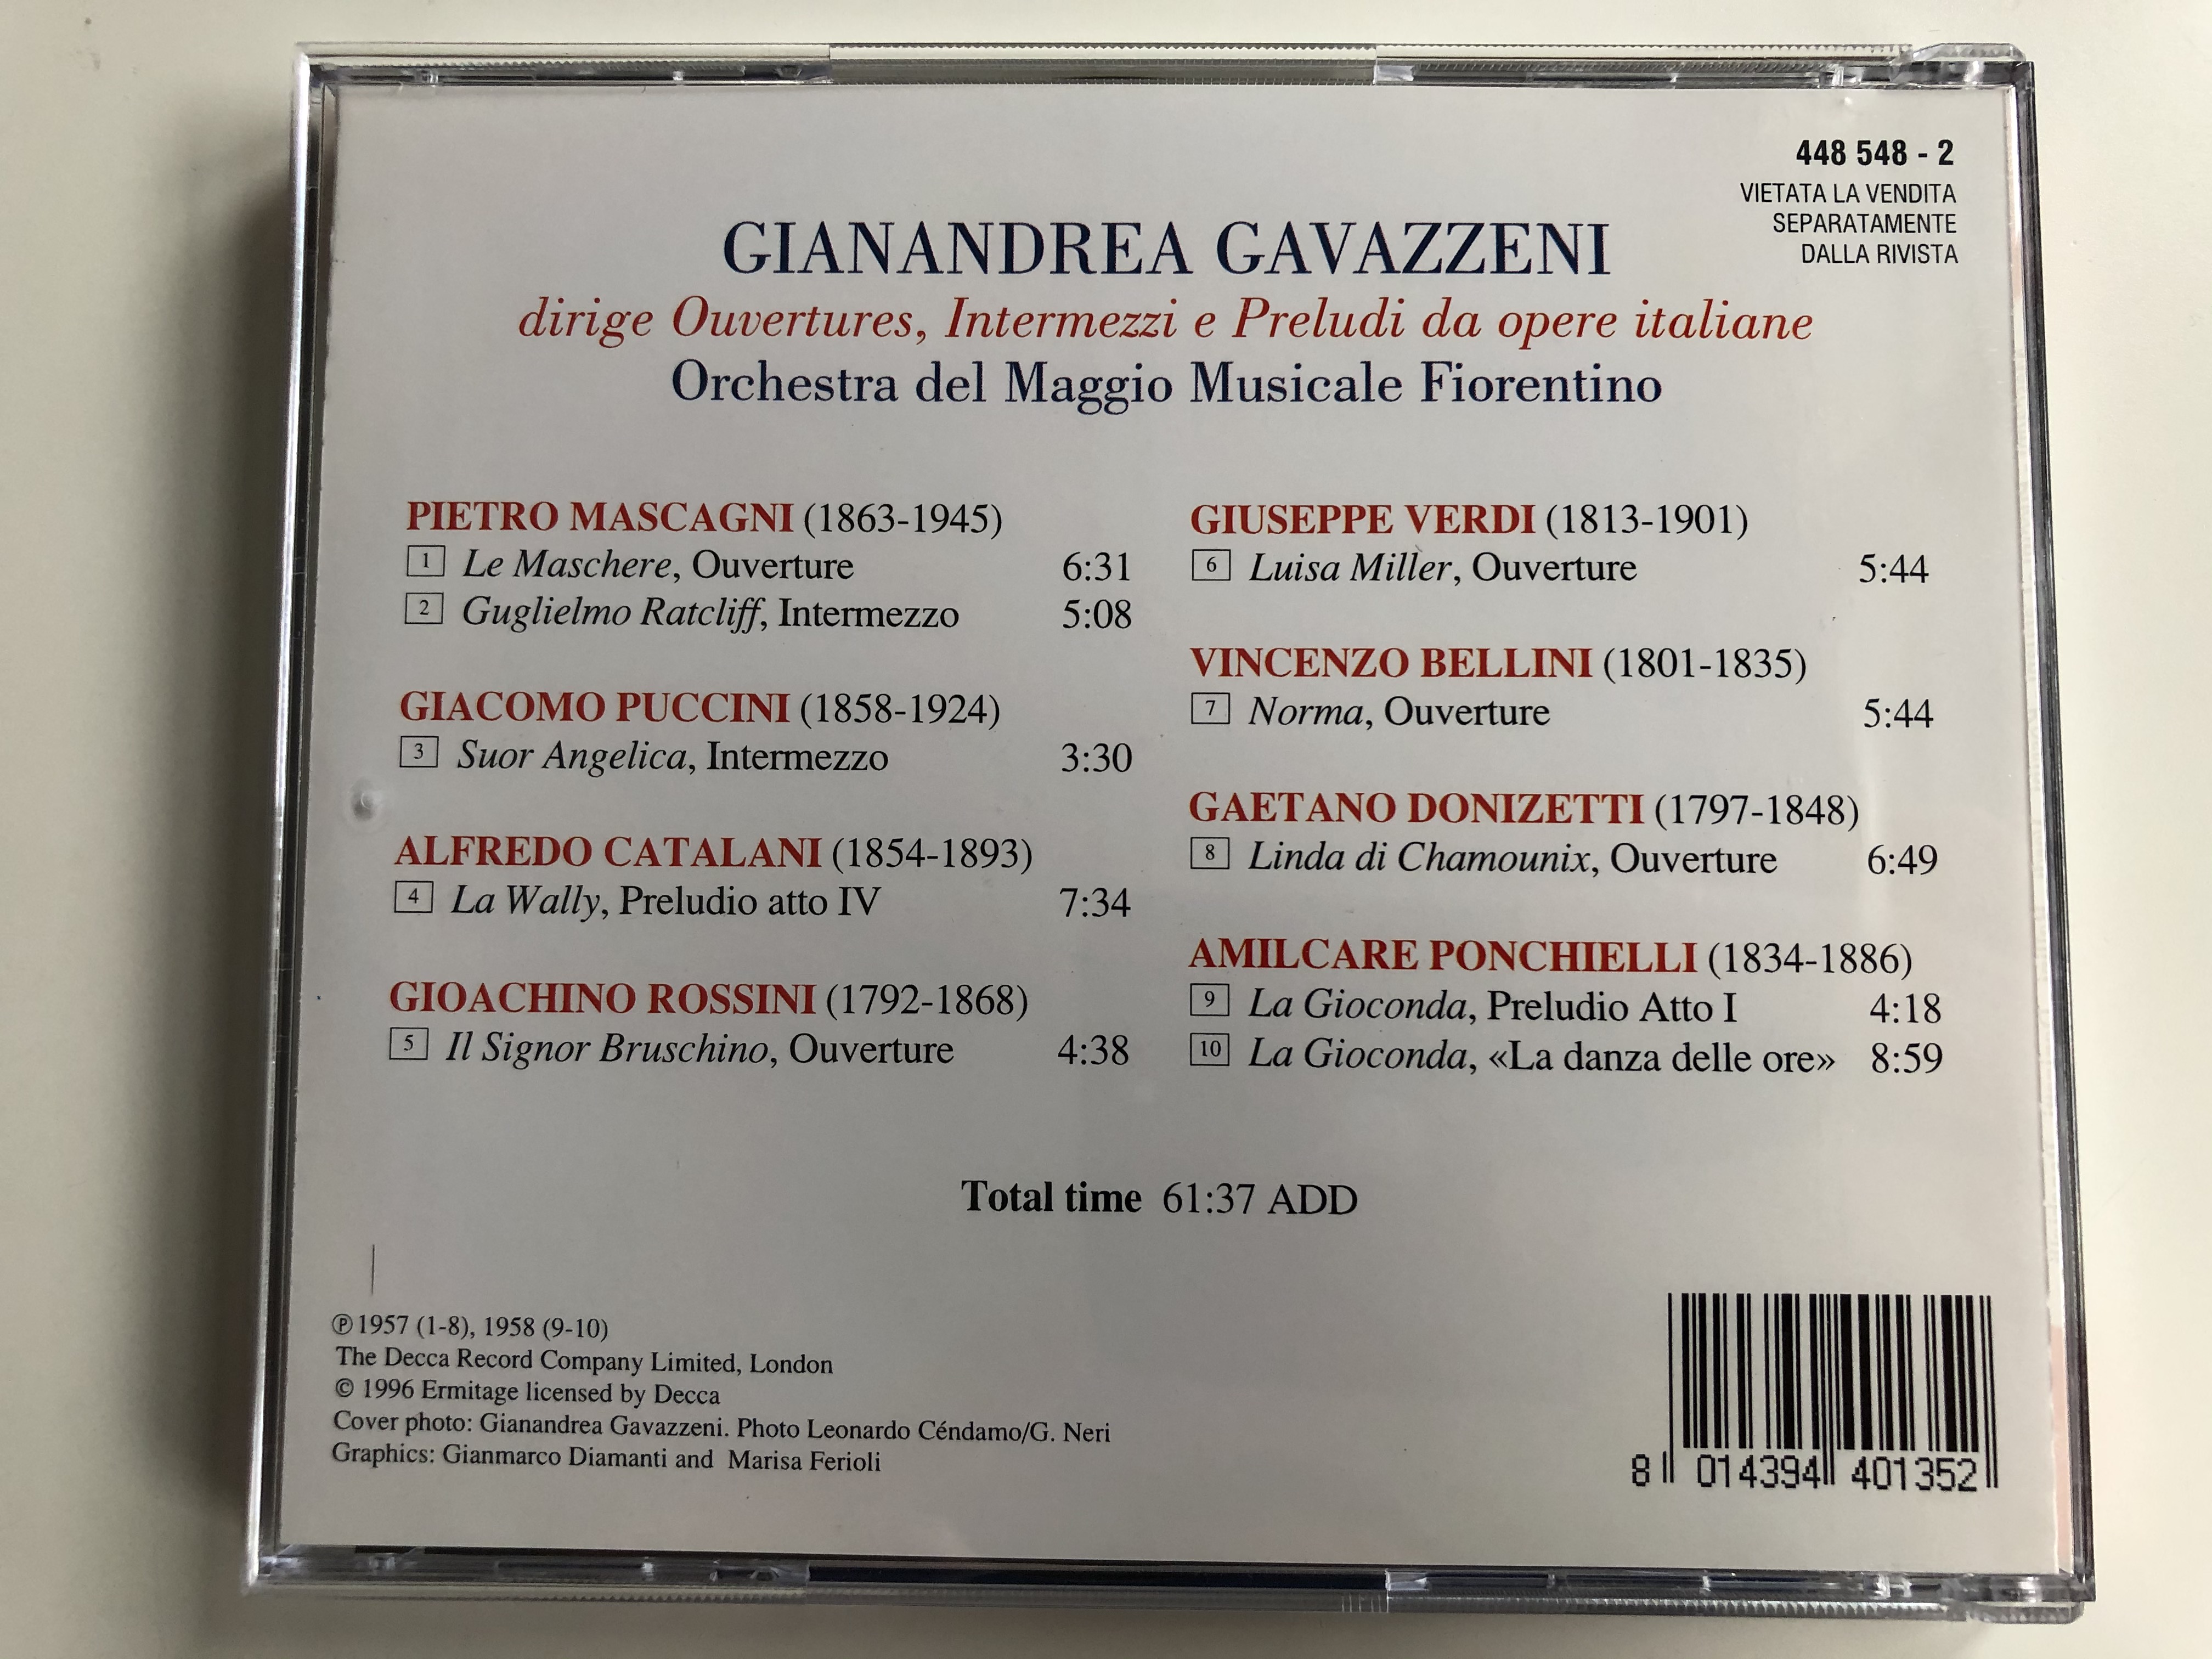 gianandrea-gavazzeni-ouvertures-intermezzi-preludi-mascagni-puccini-catalani-rossini-verdi-bellini-donizetti-ponchielli-orchestra-del-maggio-musicale-fiorentino-decca-audio-cd-1996-5-.jpg